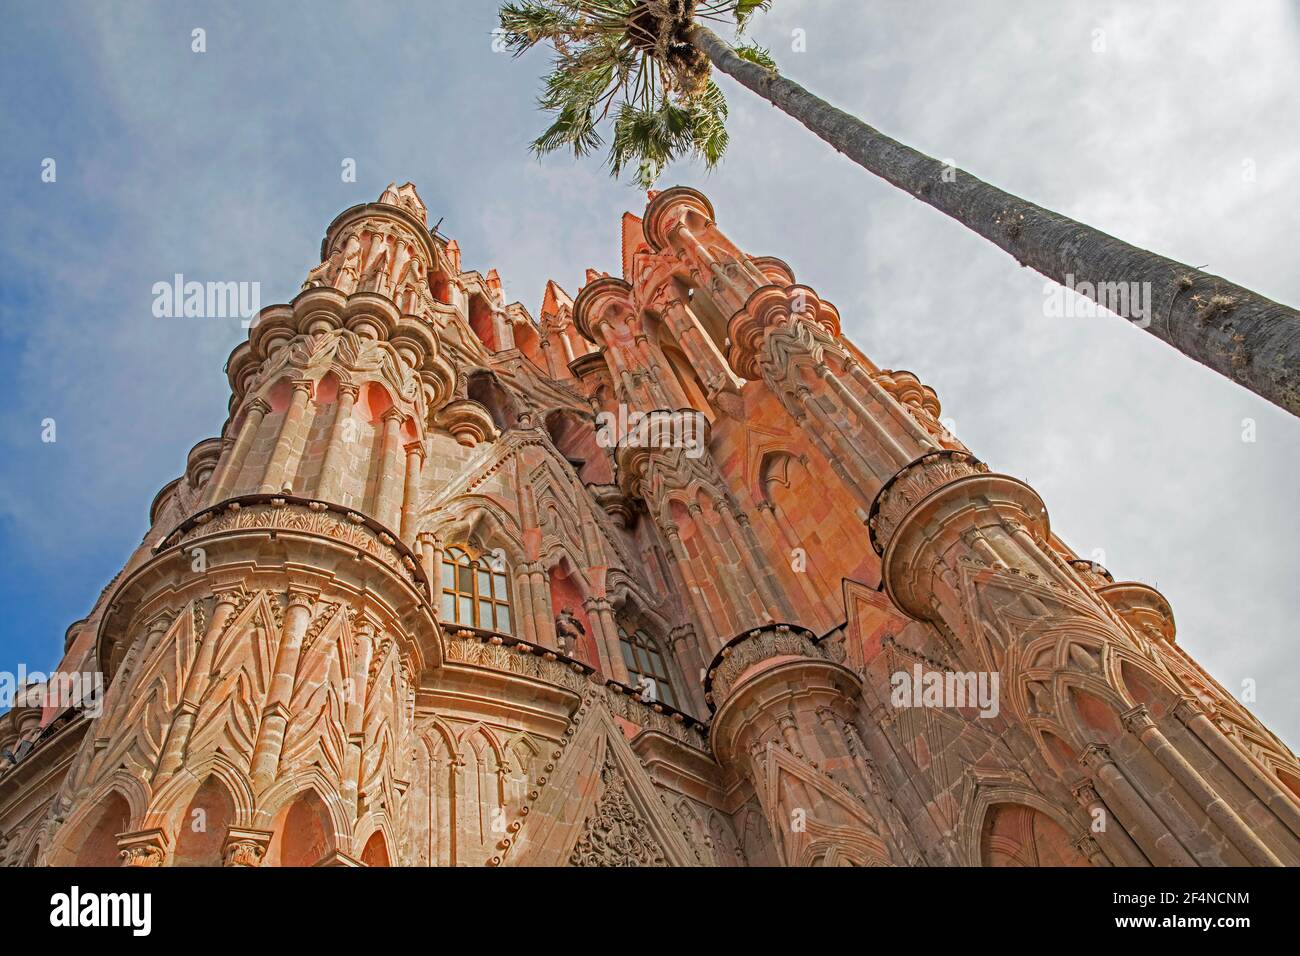 Parroquia de San Miguel Arcángel, église paroissiale néo-gothique de la ville de San Miguel de Allende, Guanajuato, Mexique Banque D'Images